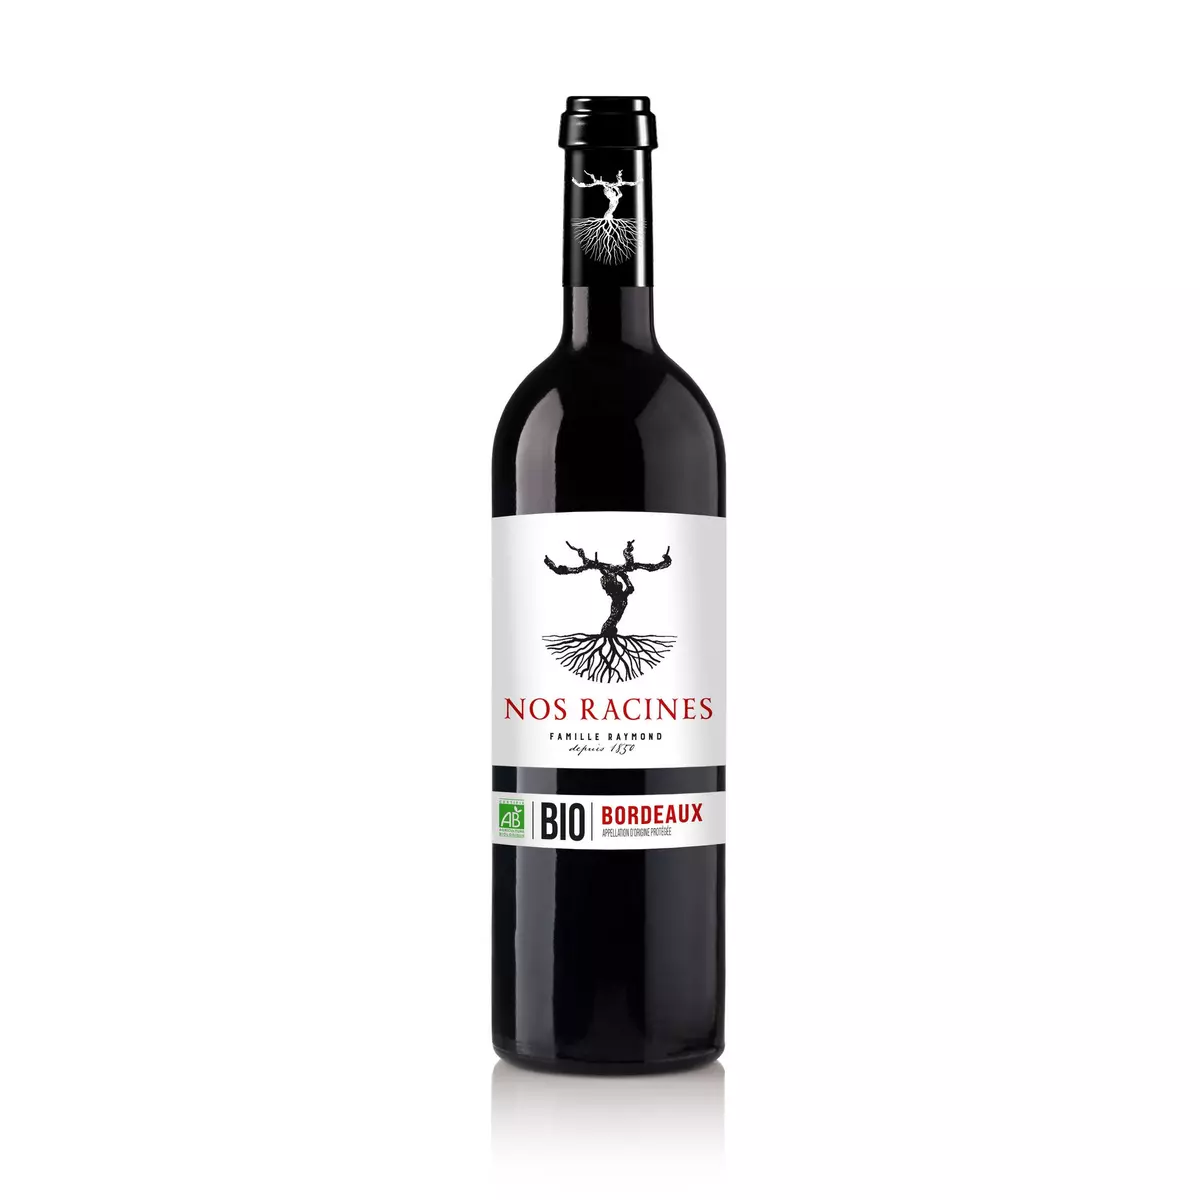 Vin rouge AOP Bordeaux bio Nos racines Famille Raymond 2020 75cl